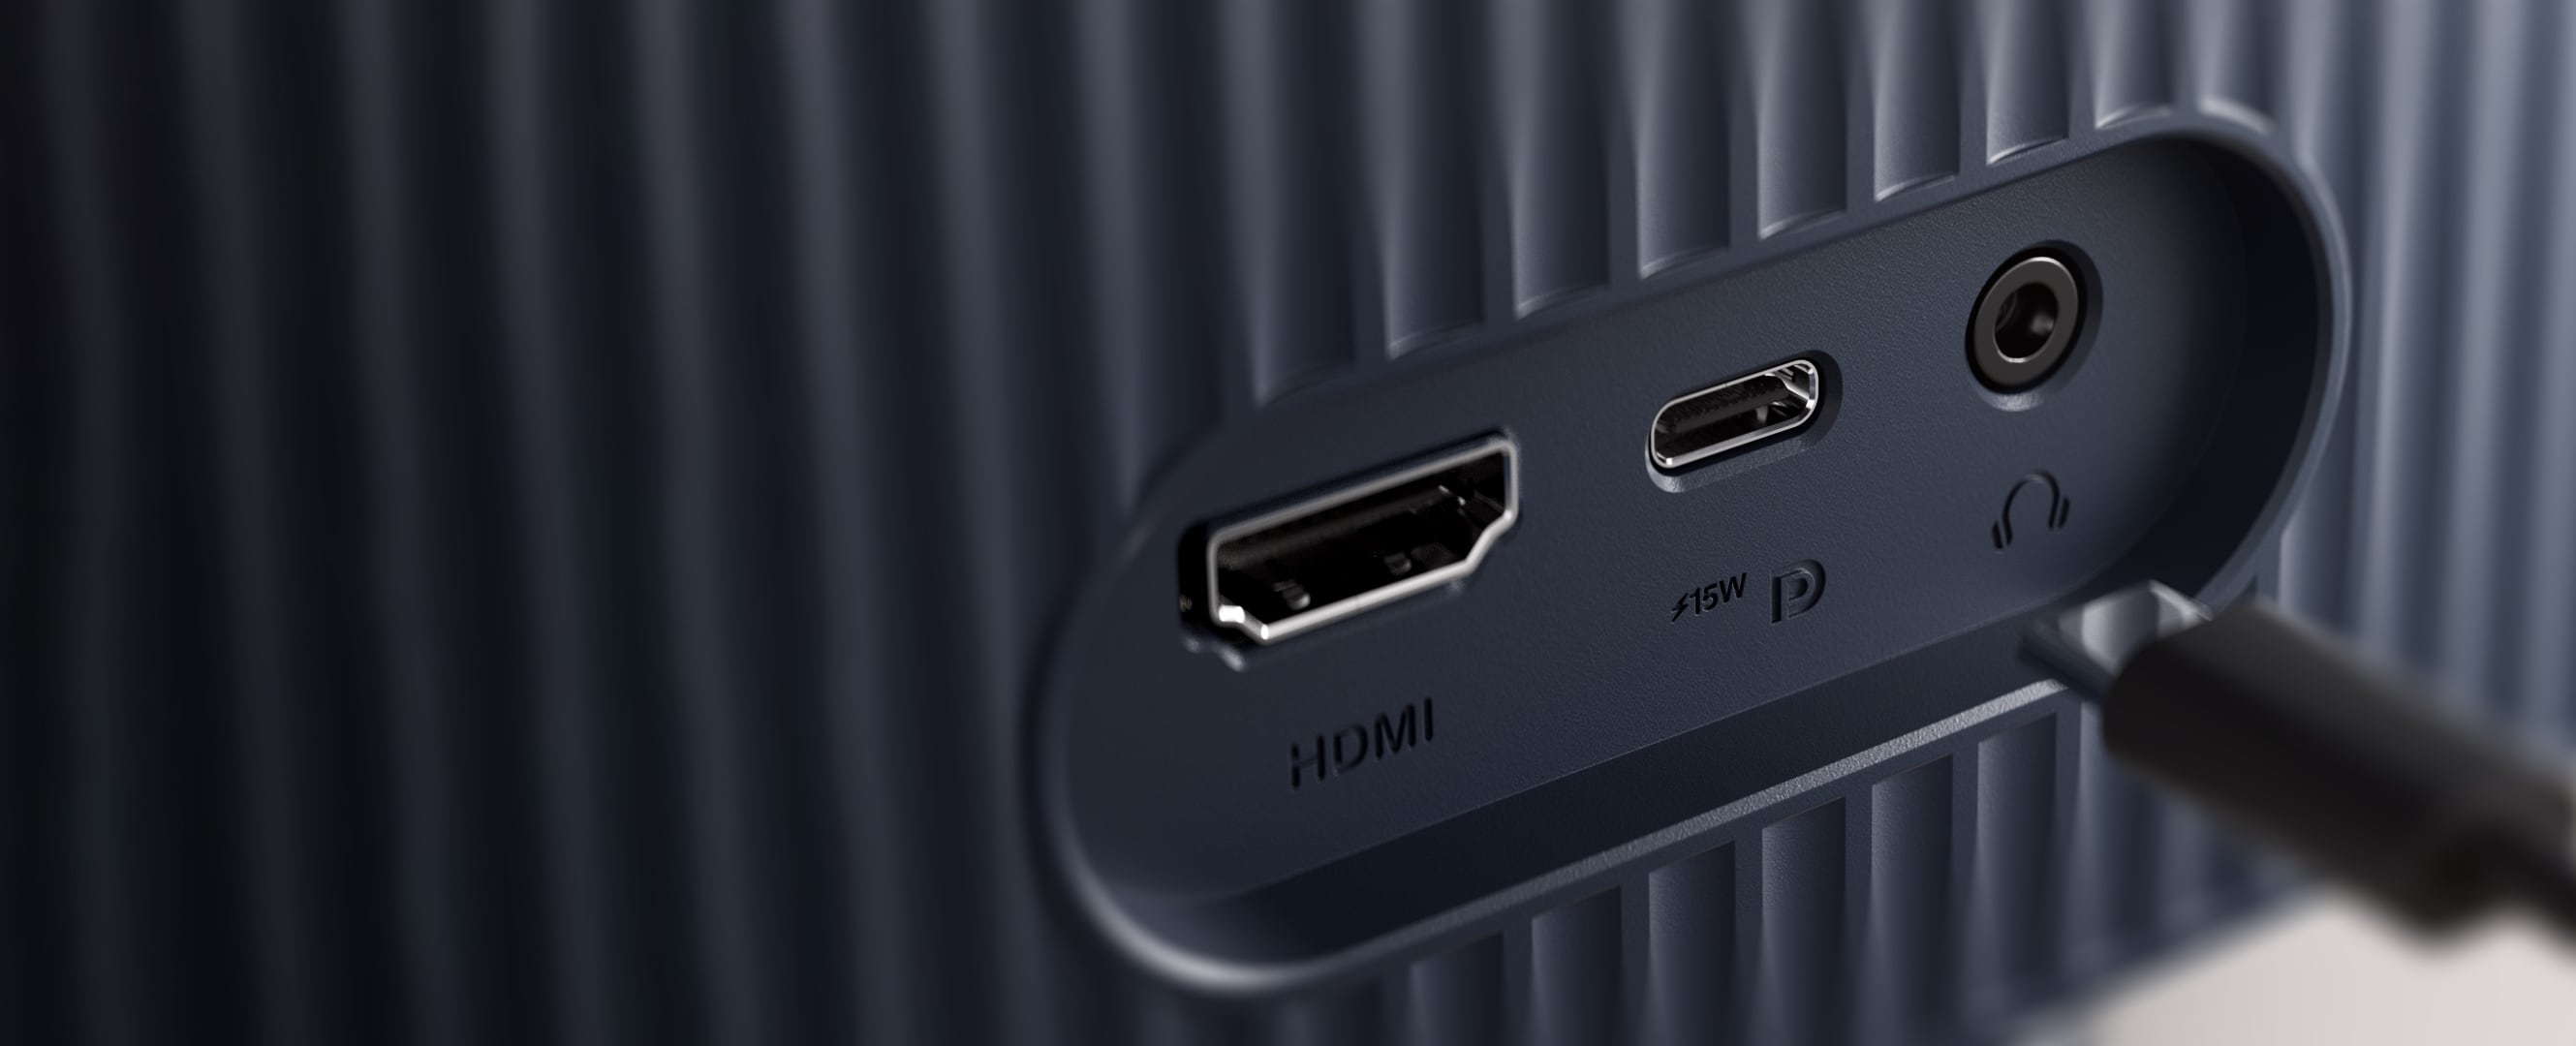 Hình ảnh hiển thị các cổng HDMI và USB-C của màn hình VU cũng như giắc cắm tai nghe